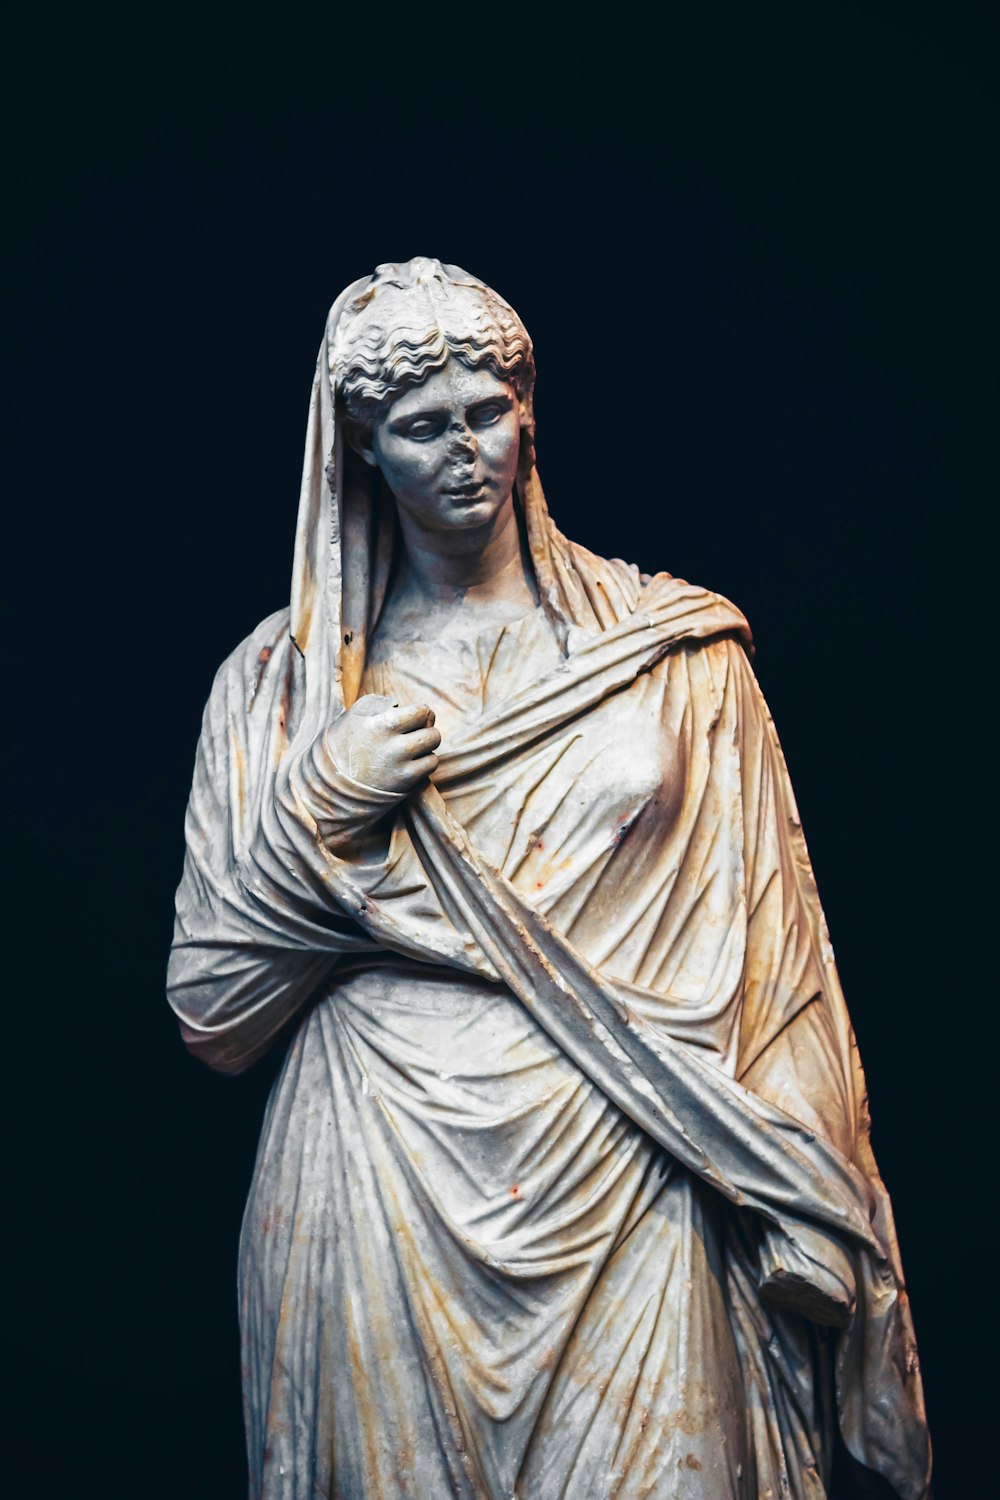 die Statue einer Frau mit einem Schleier auf dem Kopf